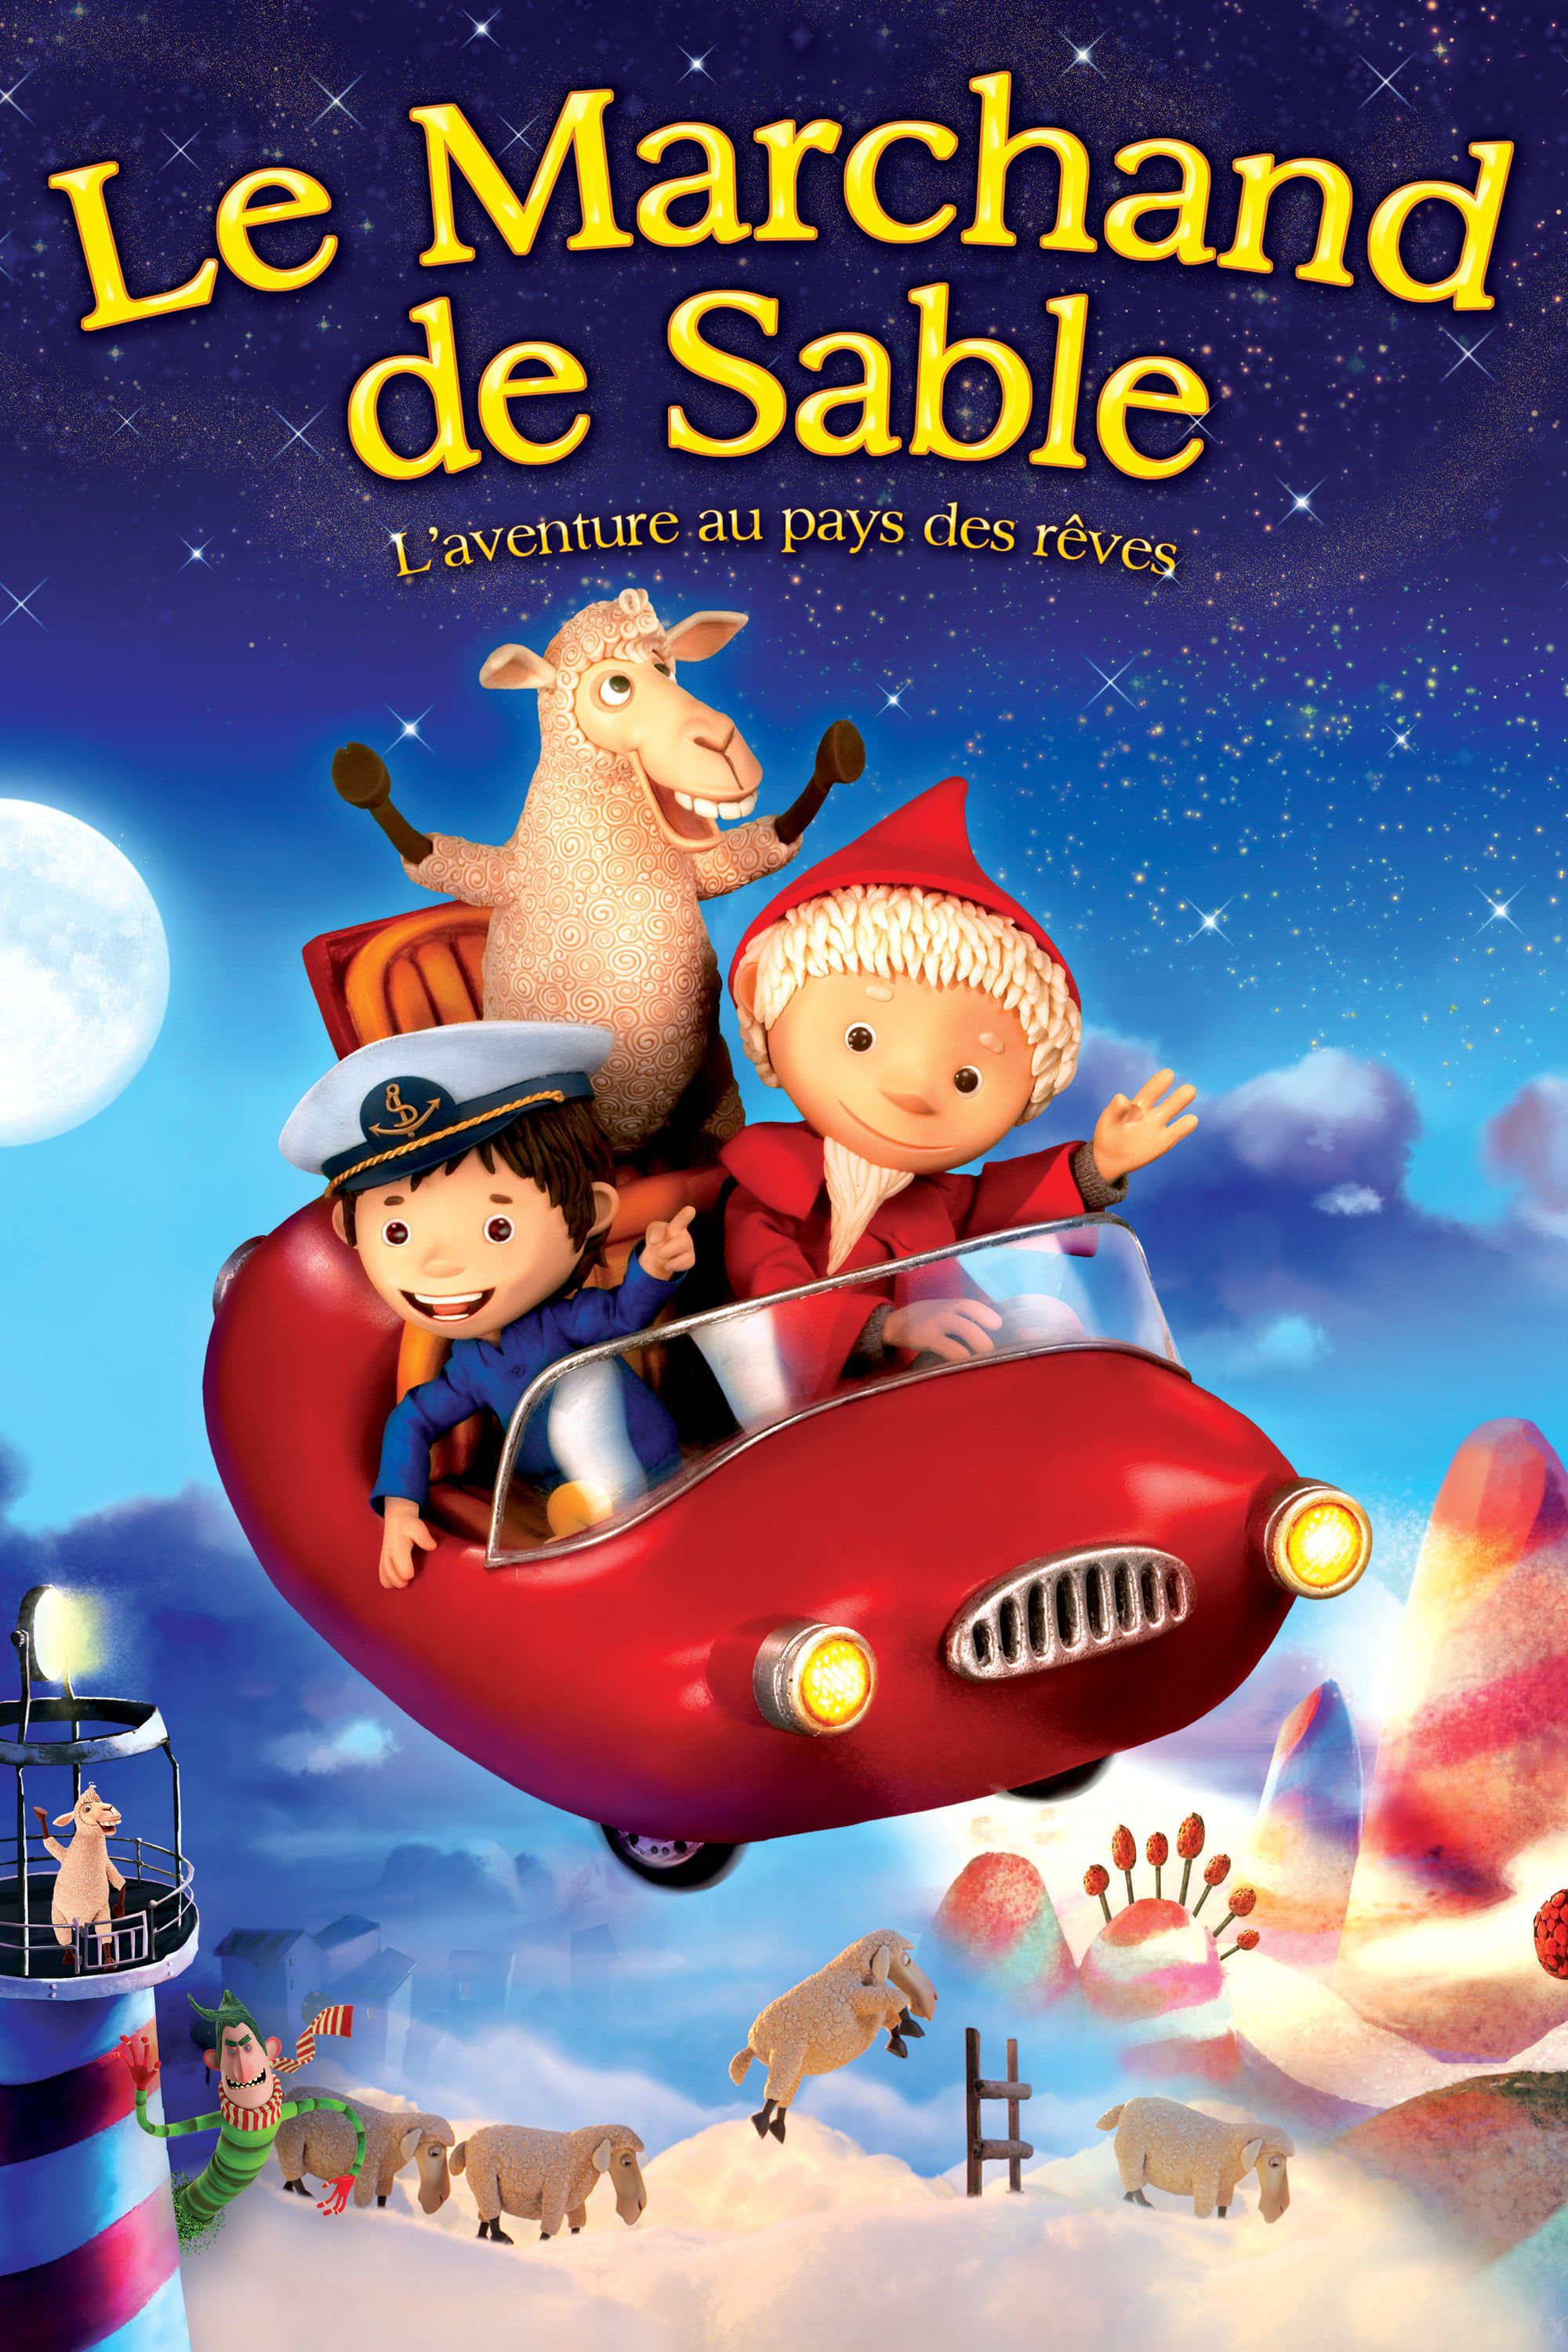 Le Marchand de Sable - Film (2011) streaming VF gratuit complet